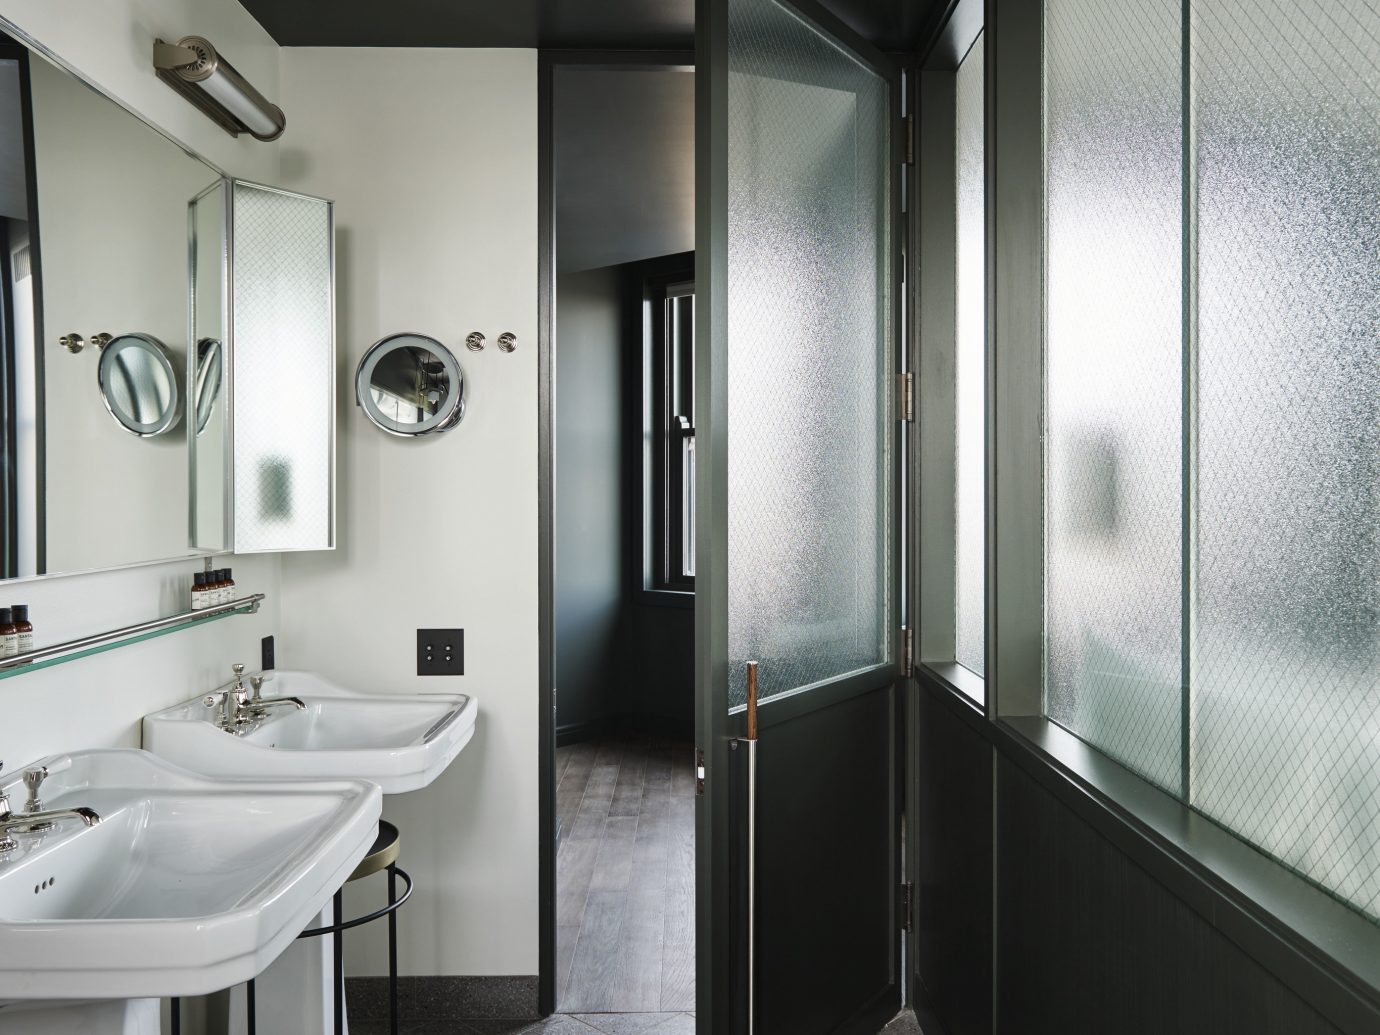 Boutique Hotels Chicago Hotels bathroom wall indoor sink mirror room property toilet interior design plumbing fixture public